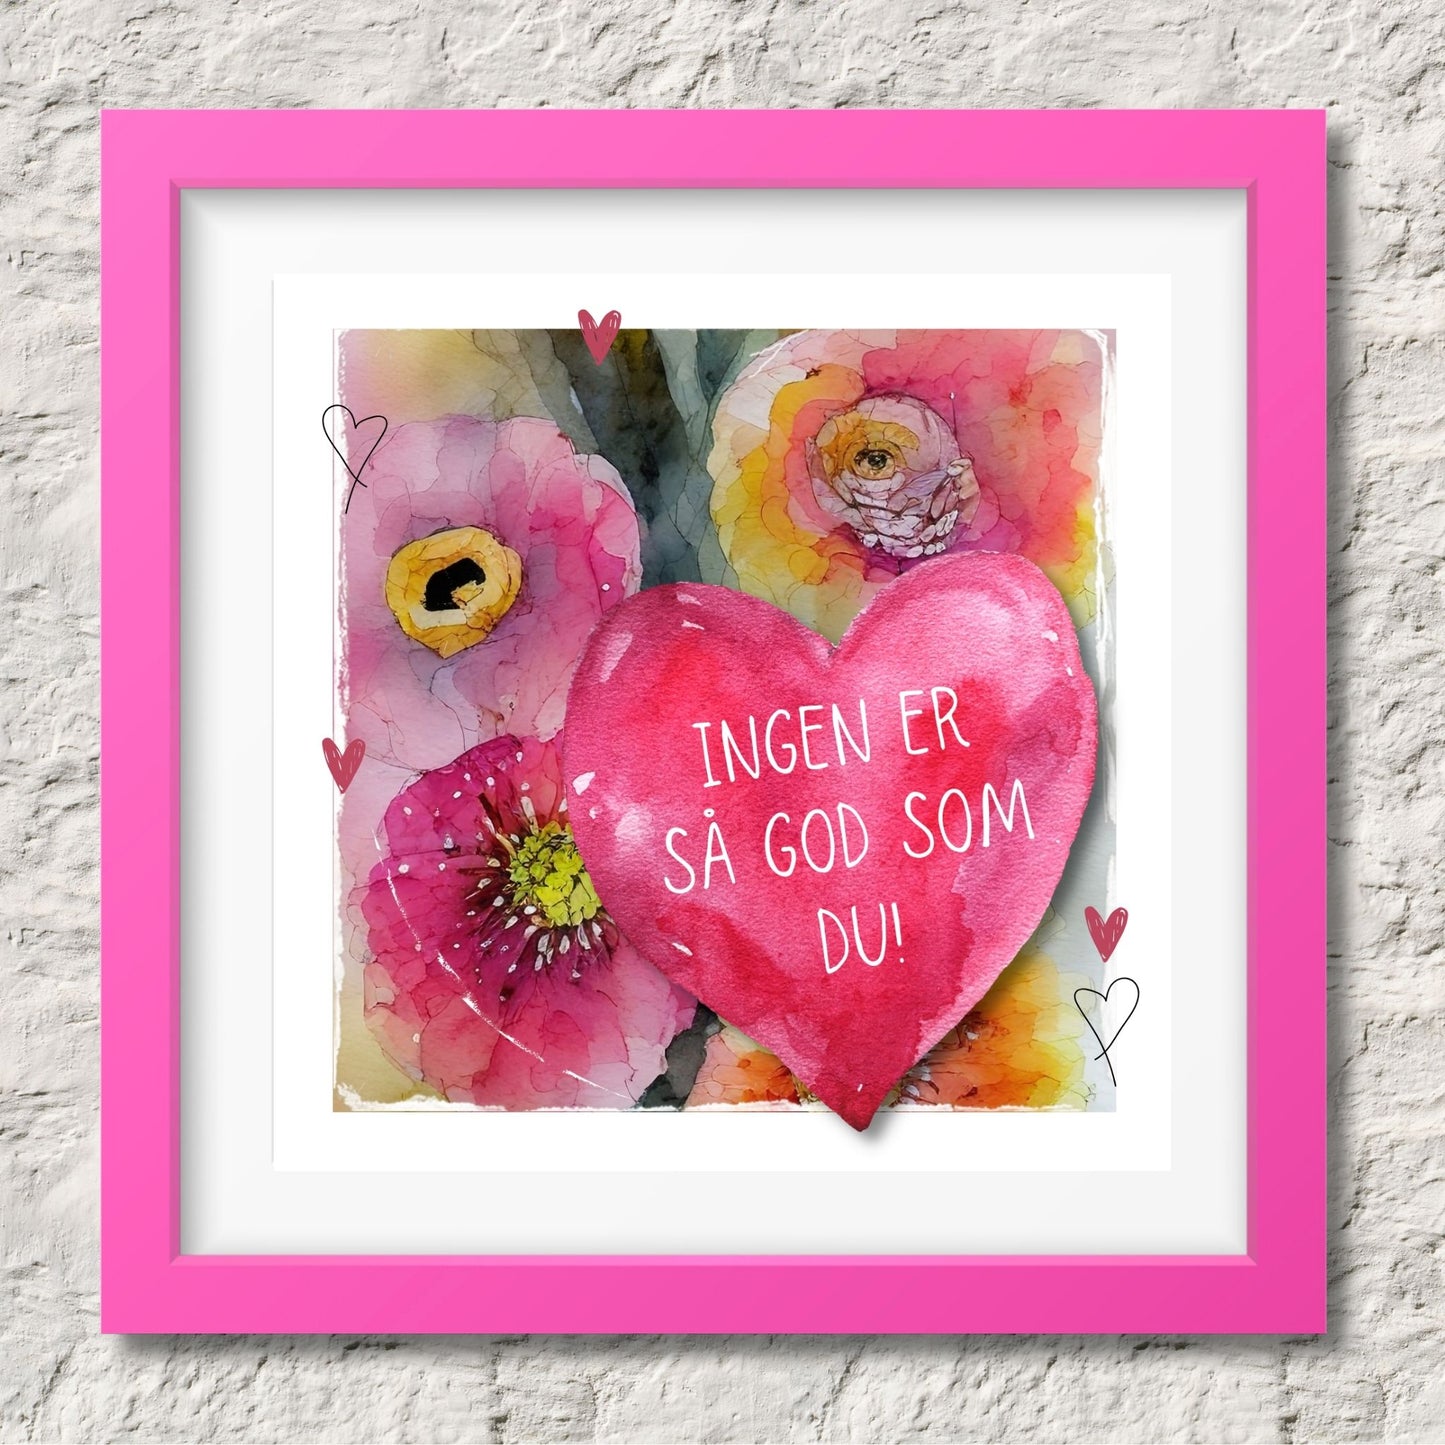 Grafisk plakat med et rosa hjerte påført tekst "Ingen er så god som du!". Bagrunn i cerise og guloransje blomster. Illustrasjinen viser plakat i rosa ramme.